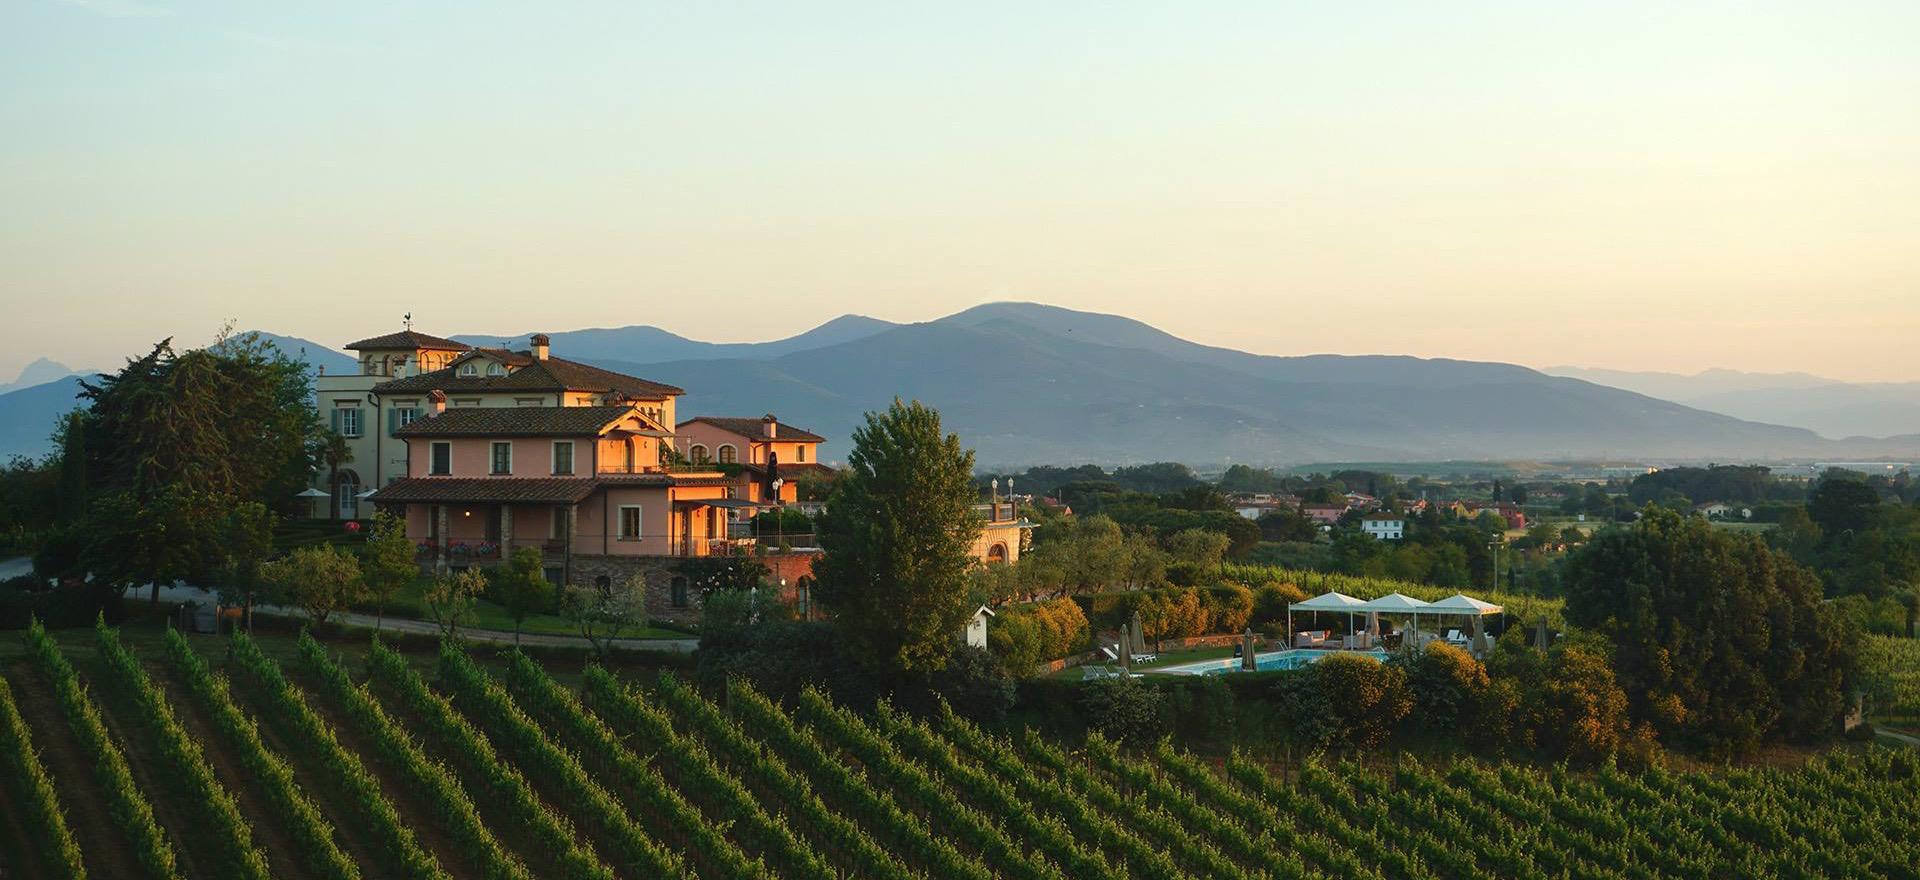 Agriturismo Tuscany Winery and luxury agriturismo near Pisa